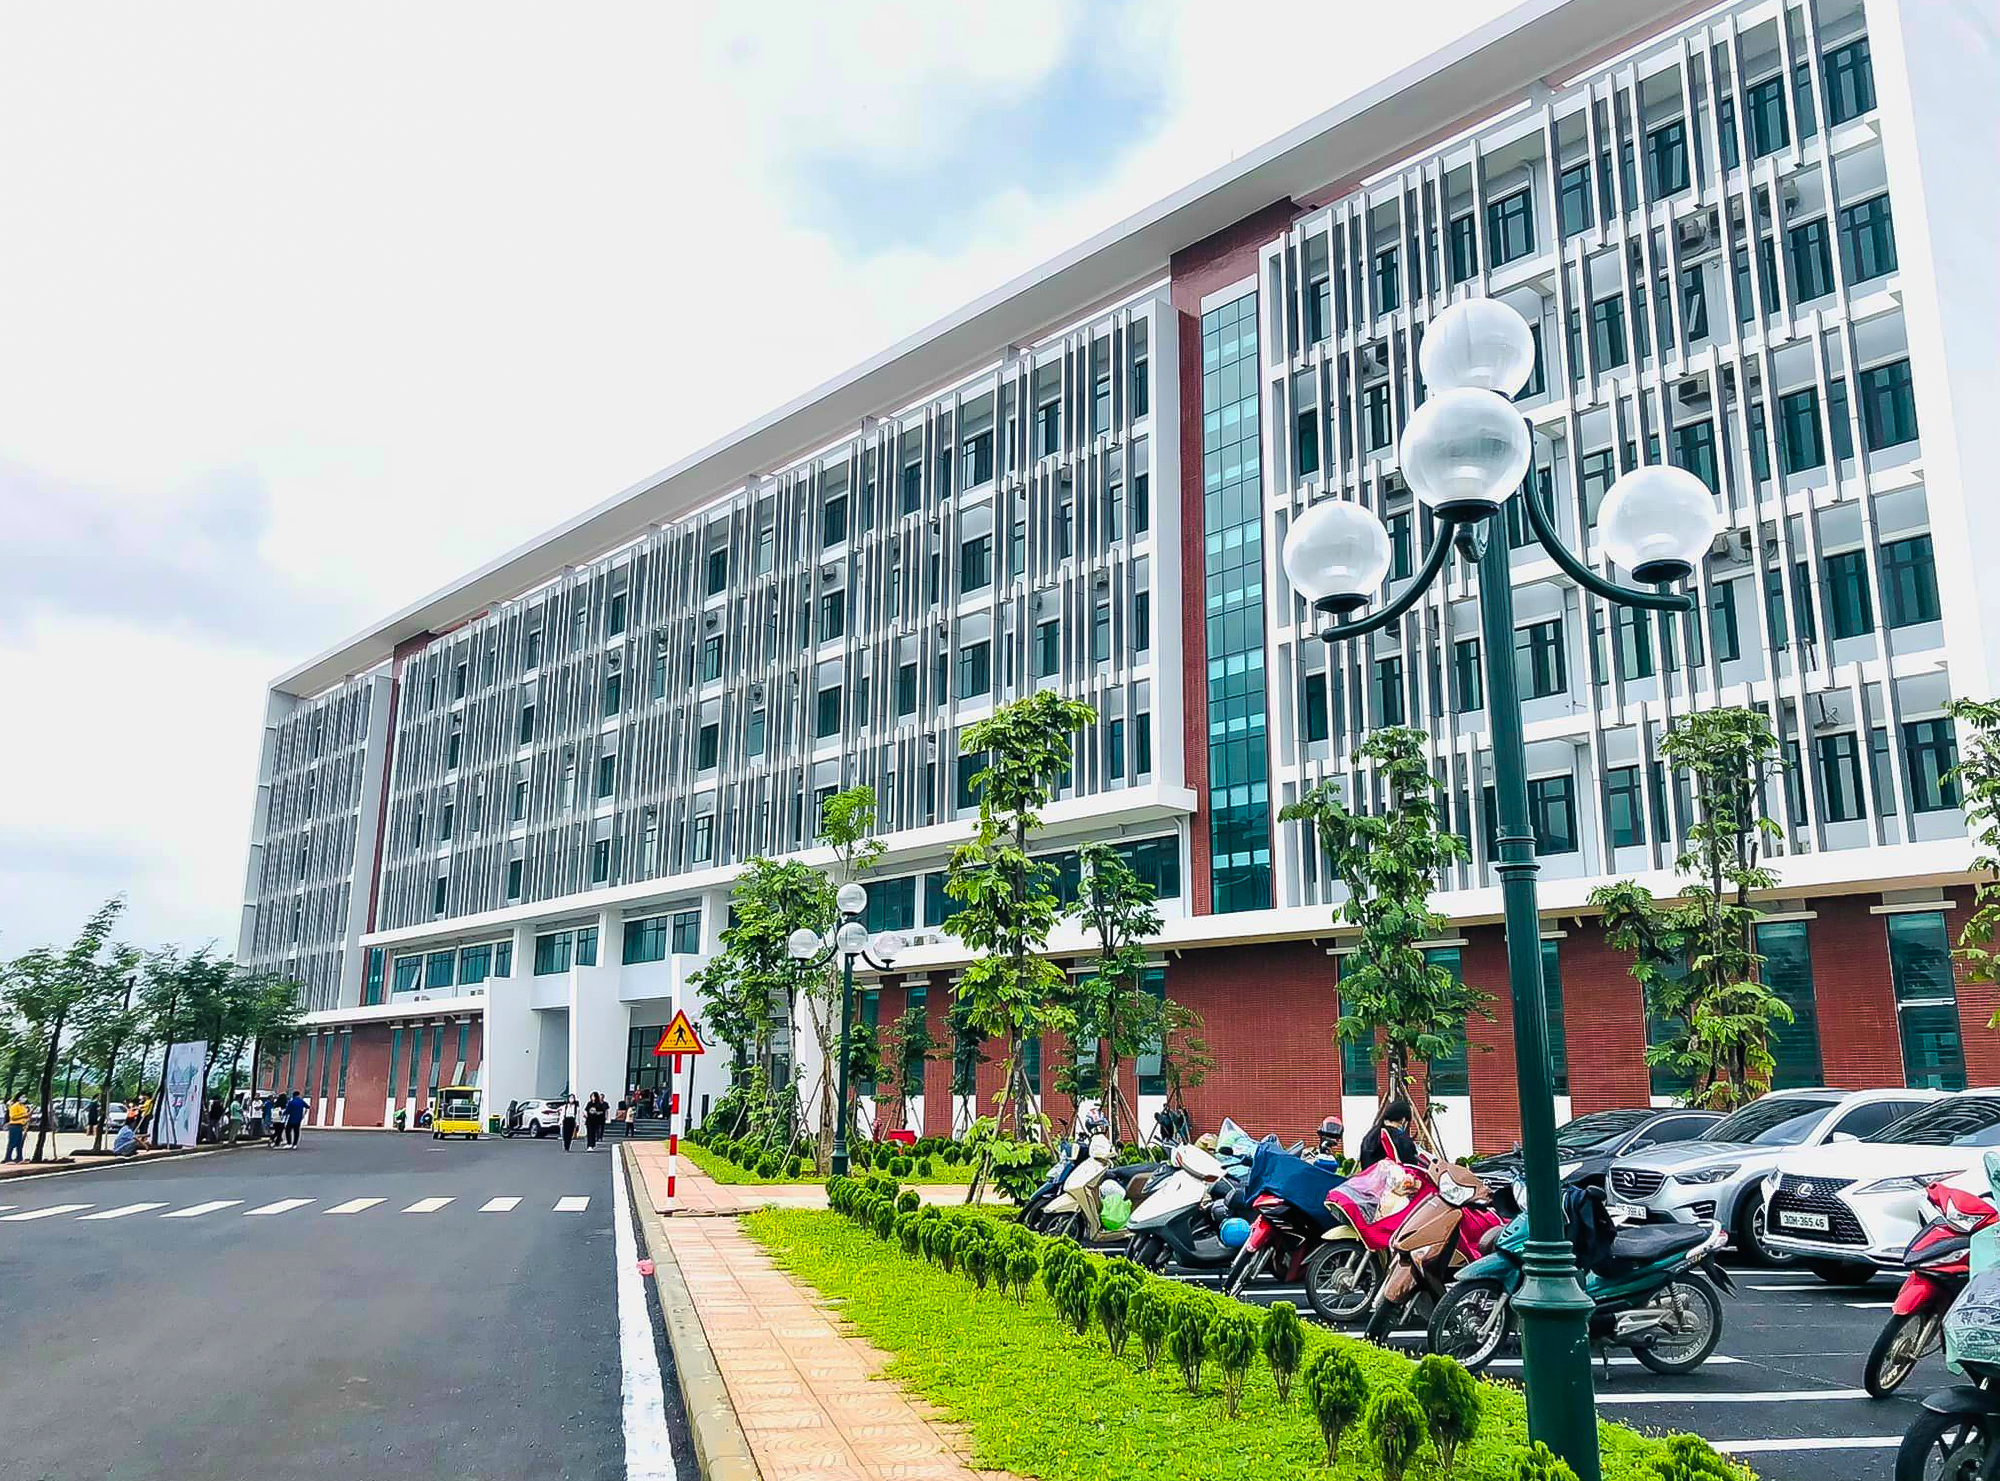 Đại học rộng nhất Việt Nam - diện tích gấp đôi quận Hoàn Kiếm, Hà Nội - Ảnh 5.